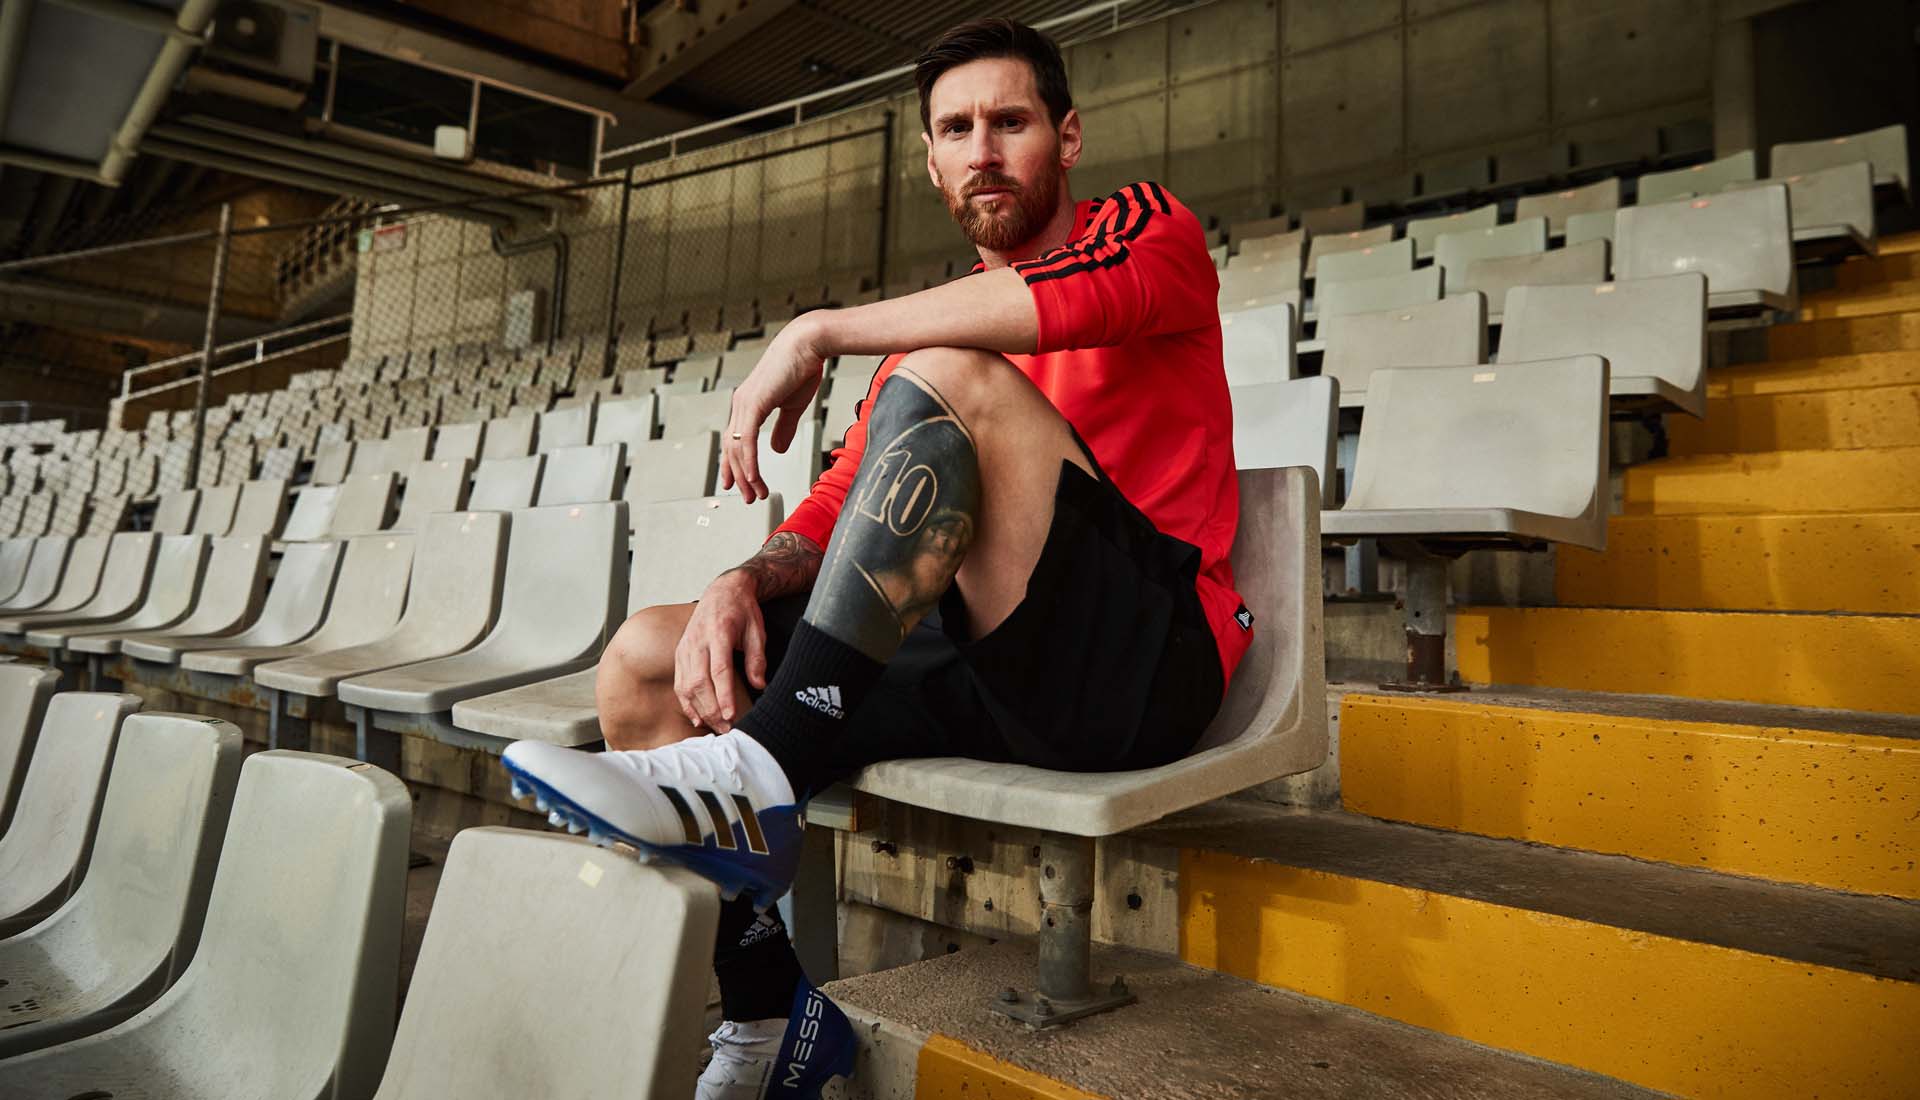 Dòng giày bóng đá Adidas Nemeziz là dòng giày Messi sử dụng để thi đấu chuyên nghiệp